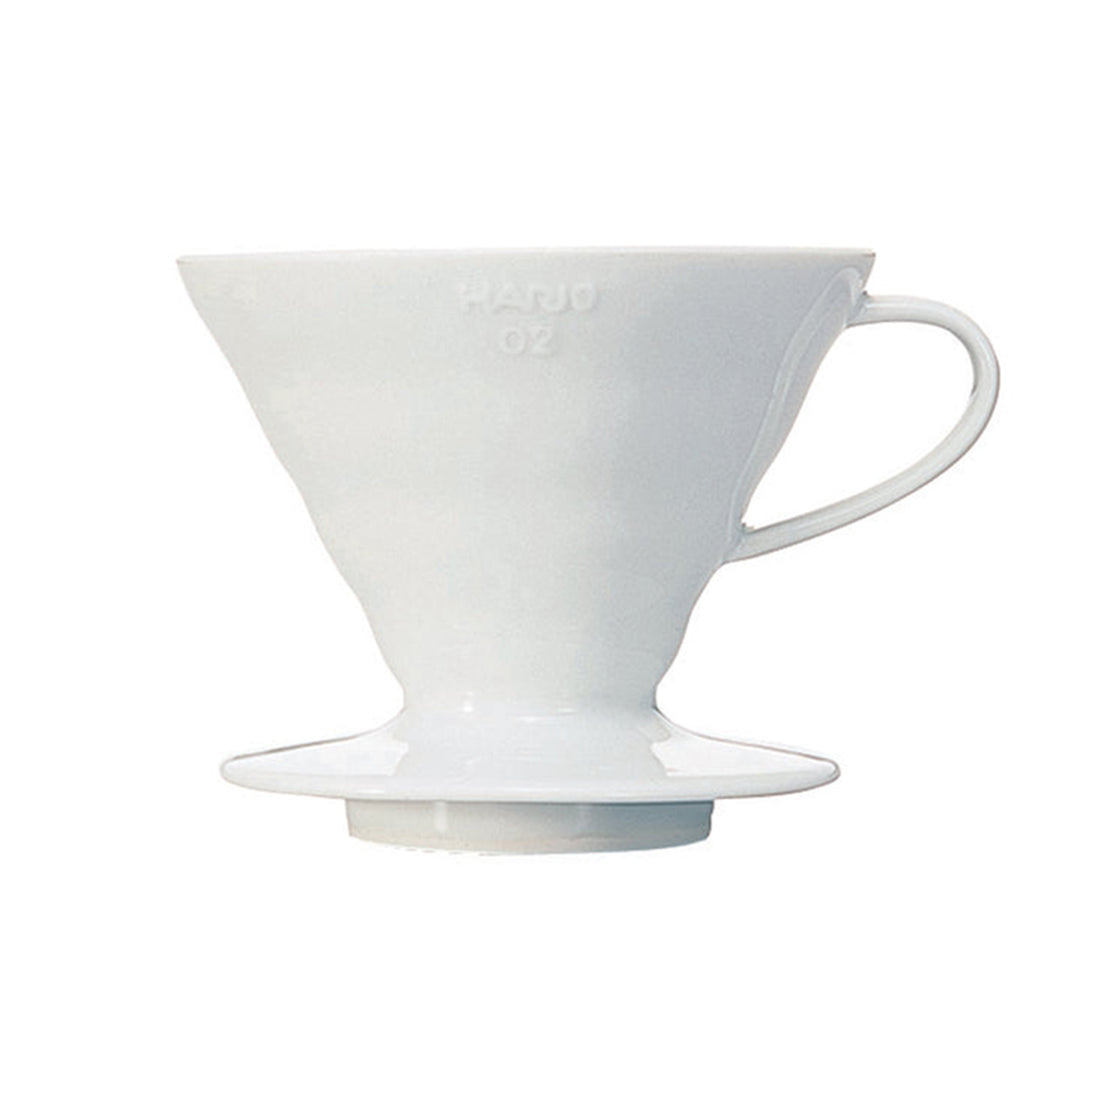 Hario, Hario V60 02 (2 Cups) Ceramic Coffee Dripper - White, Redber Coffee